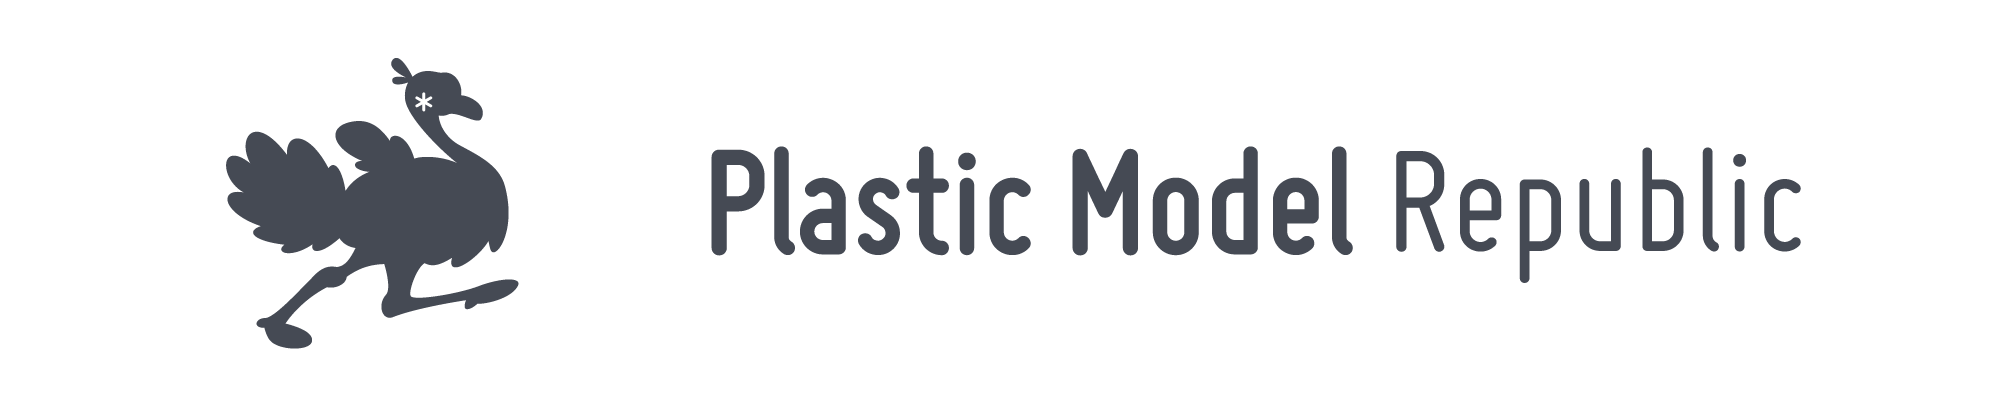 Plastic Model Republic